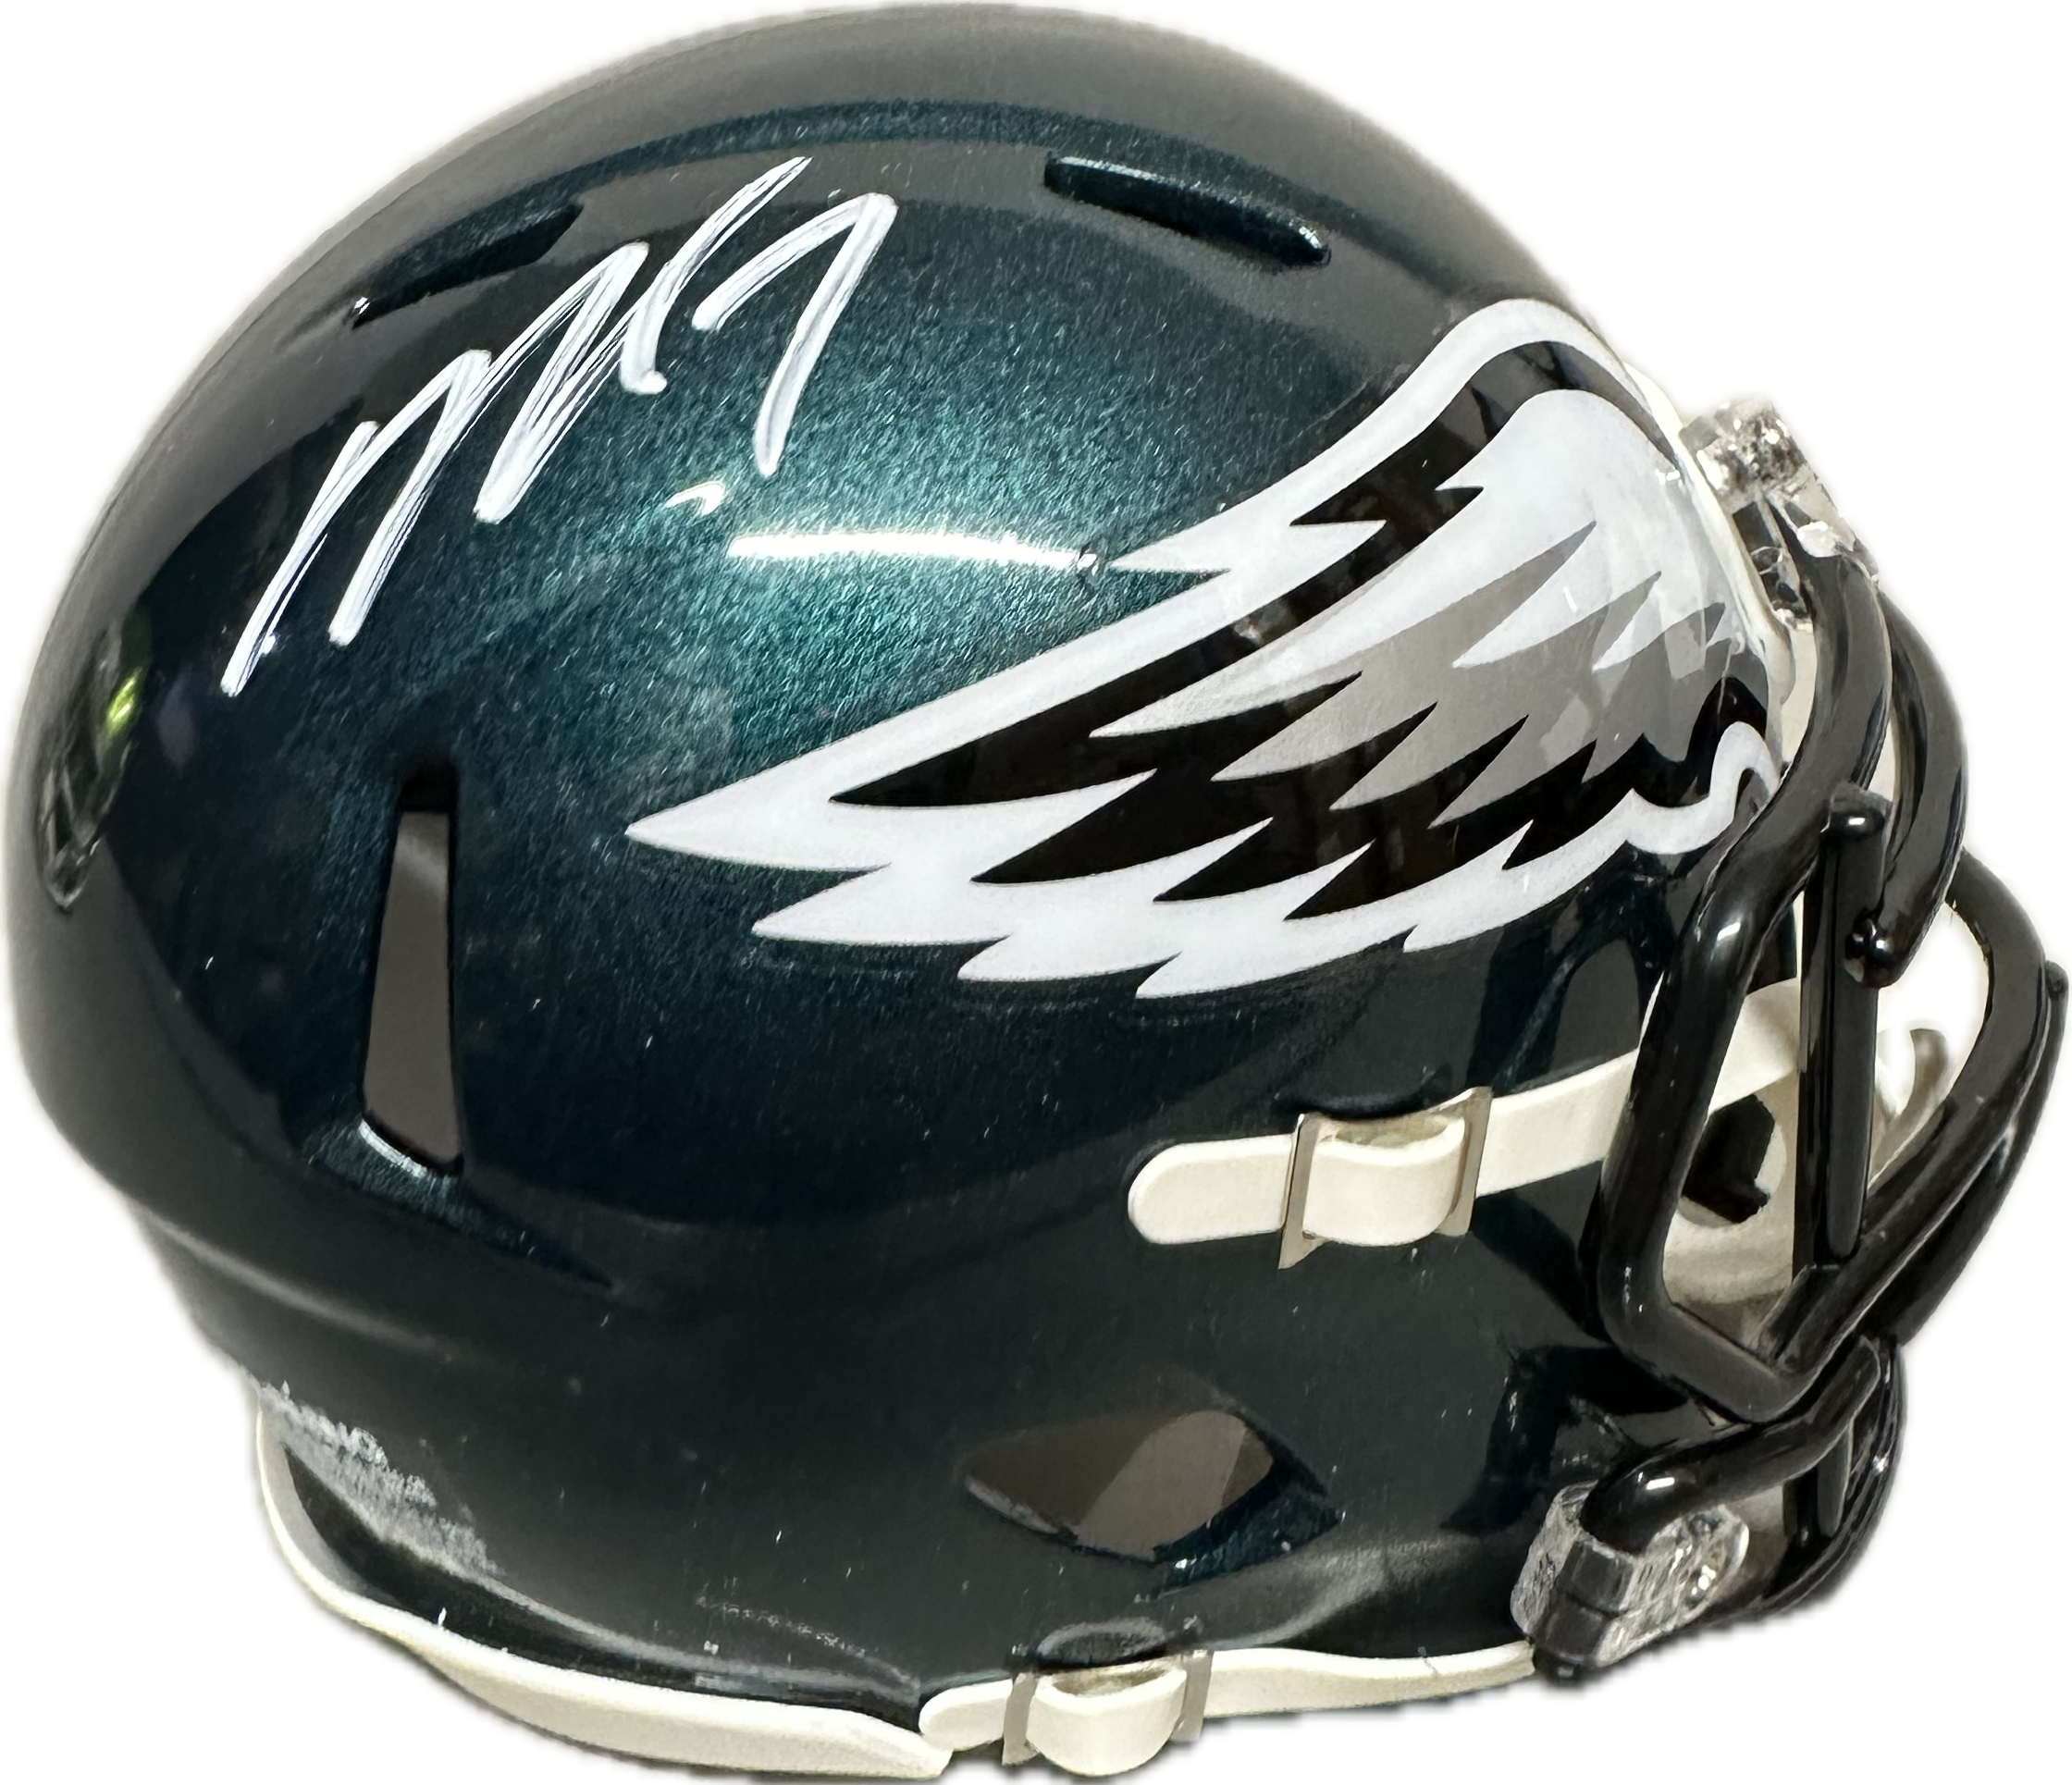 Michael Vick Home Philadelphia Signed Mini Football Helmet (JSA)